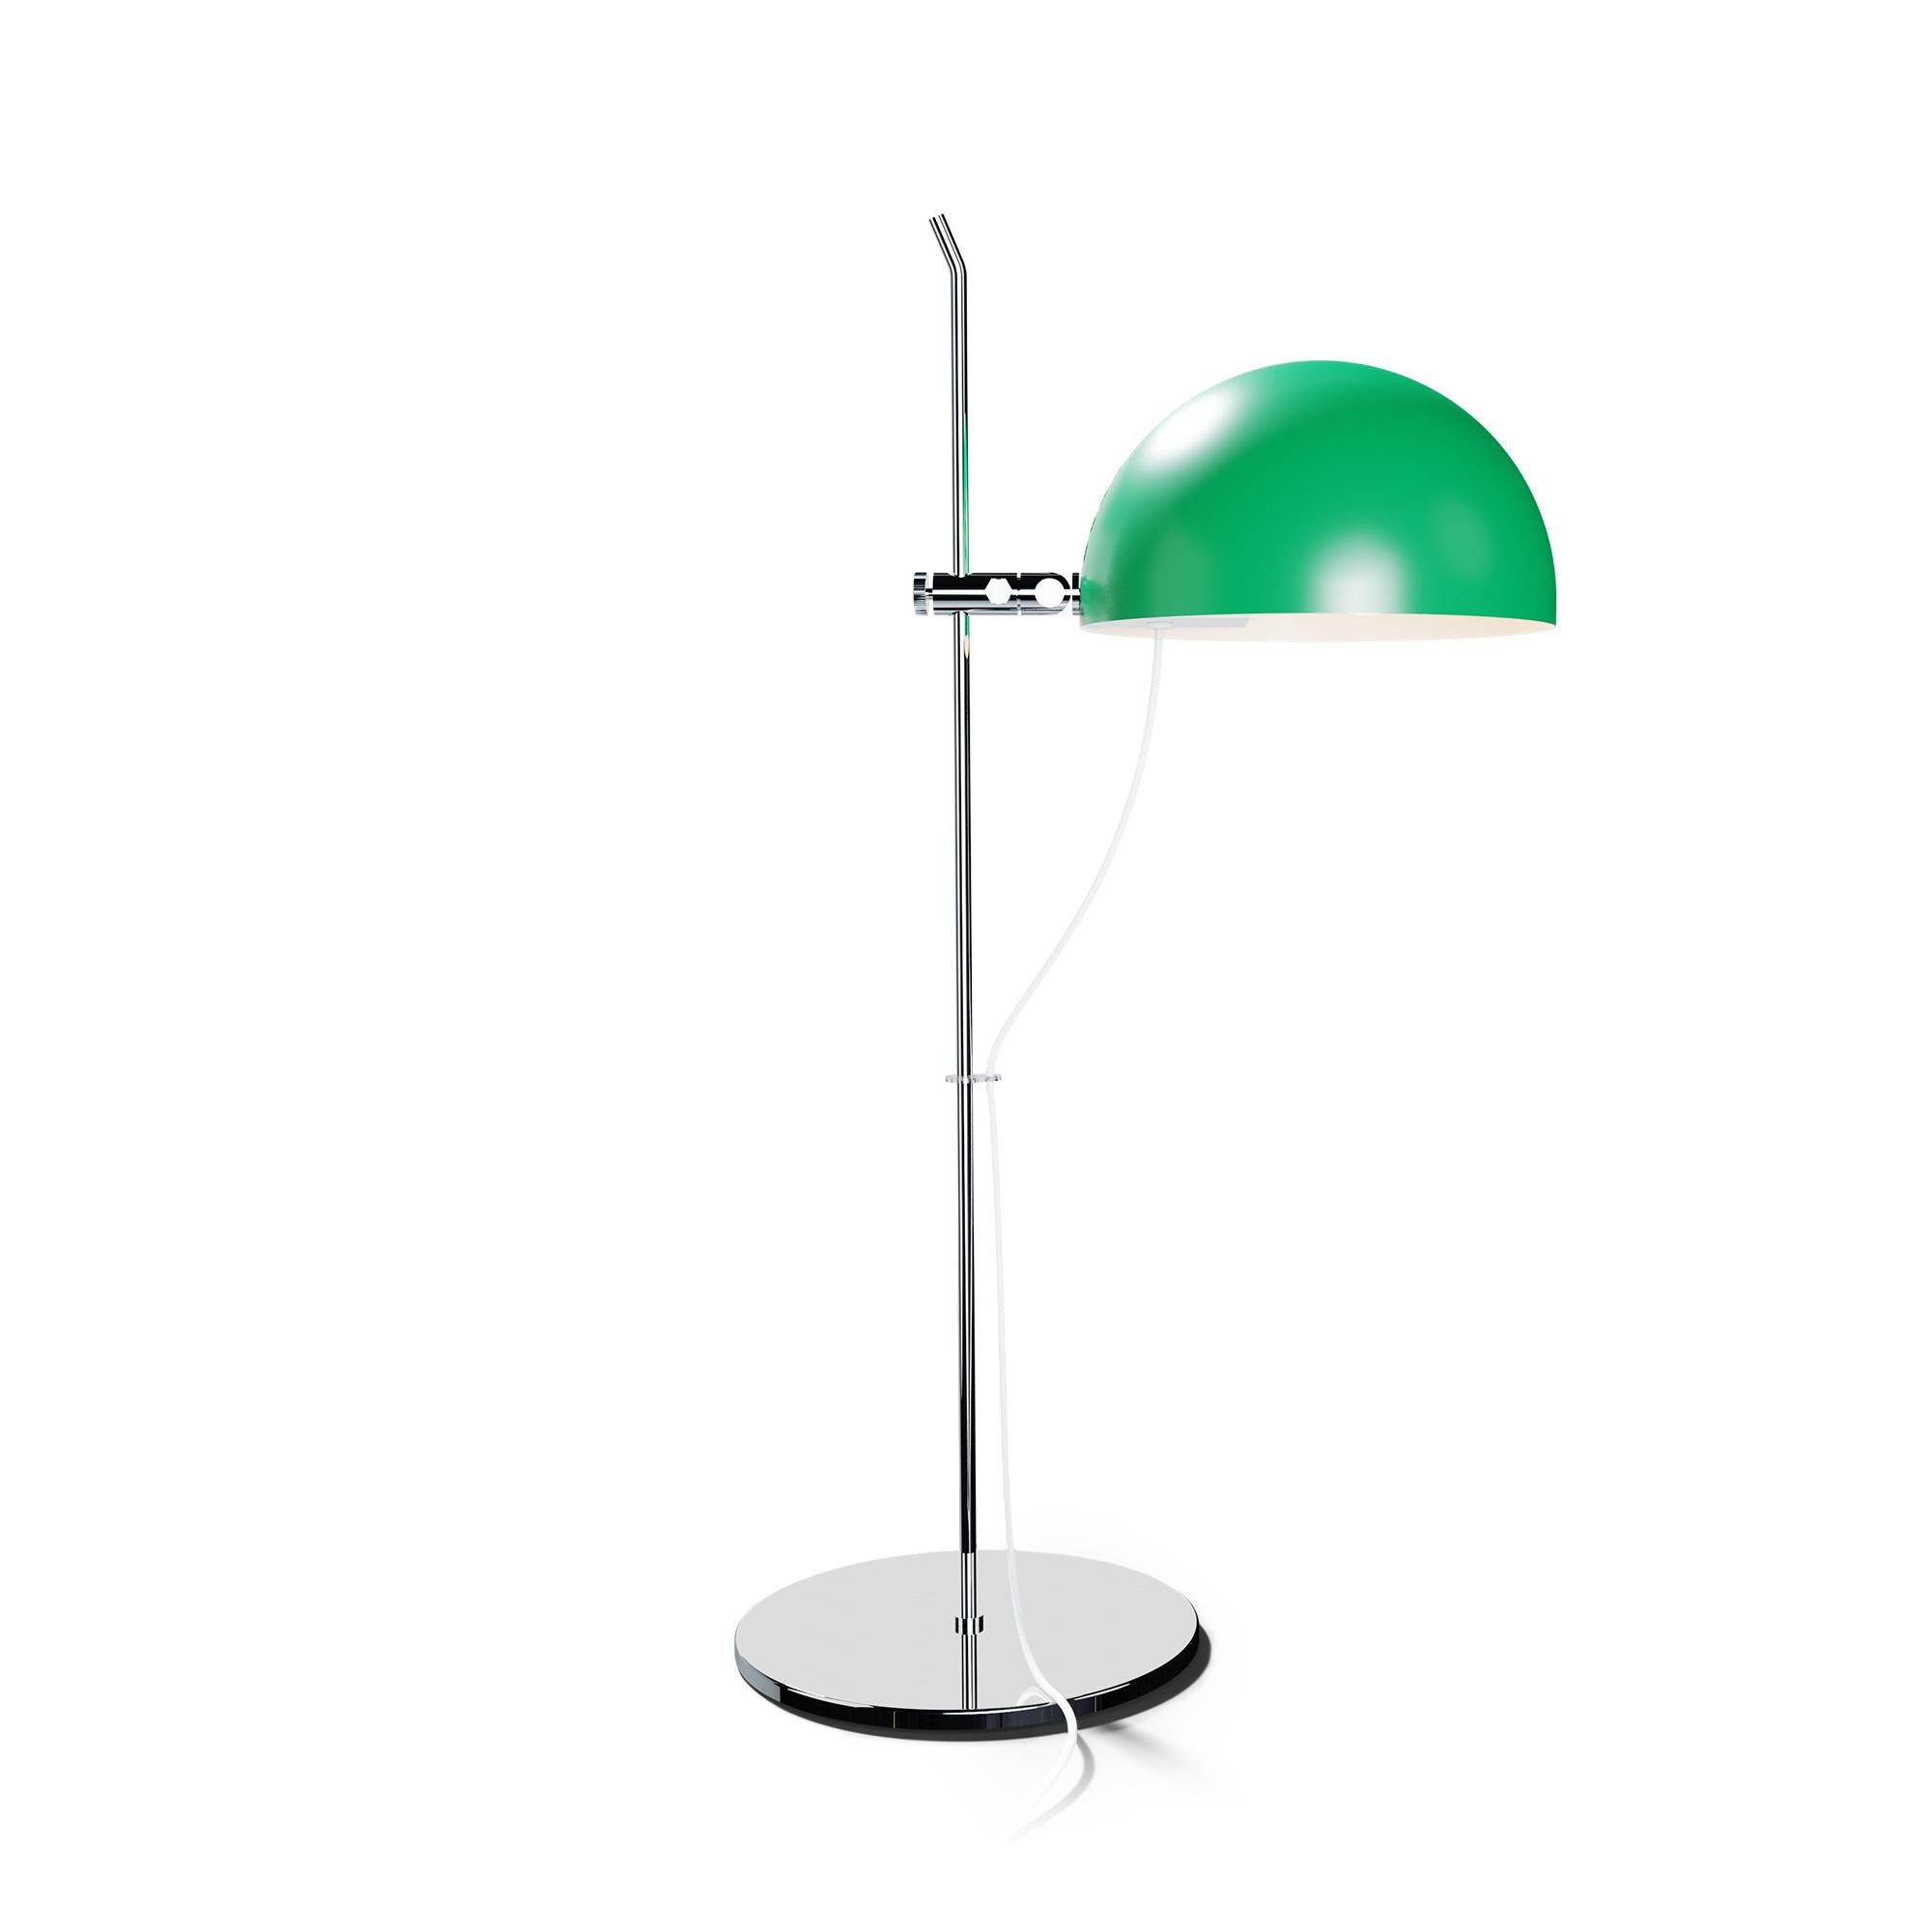 Mid-Century Modern Alain Richard 'A21' Desk Lamp in Green for Disderot For Sale